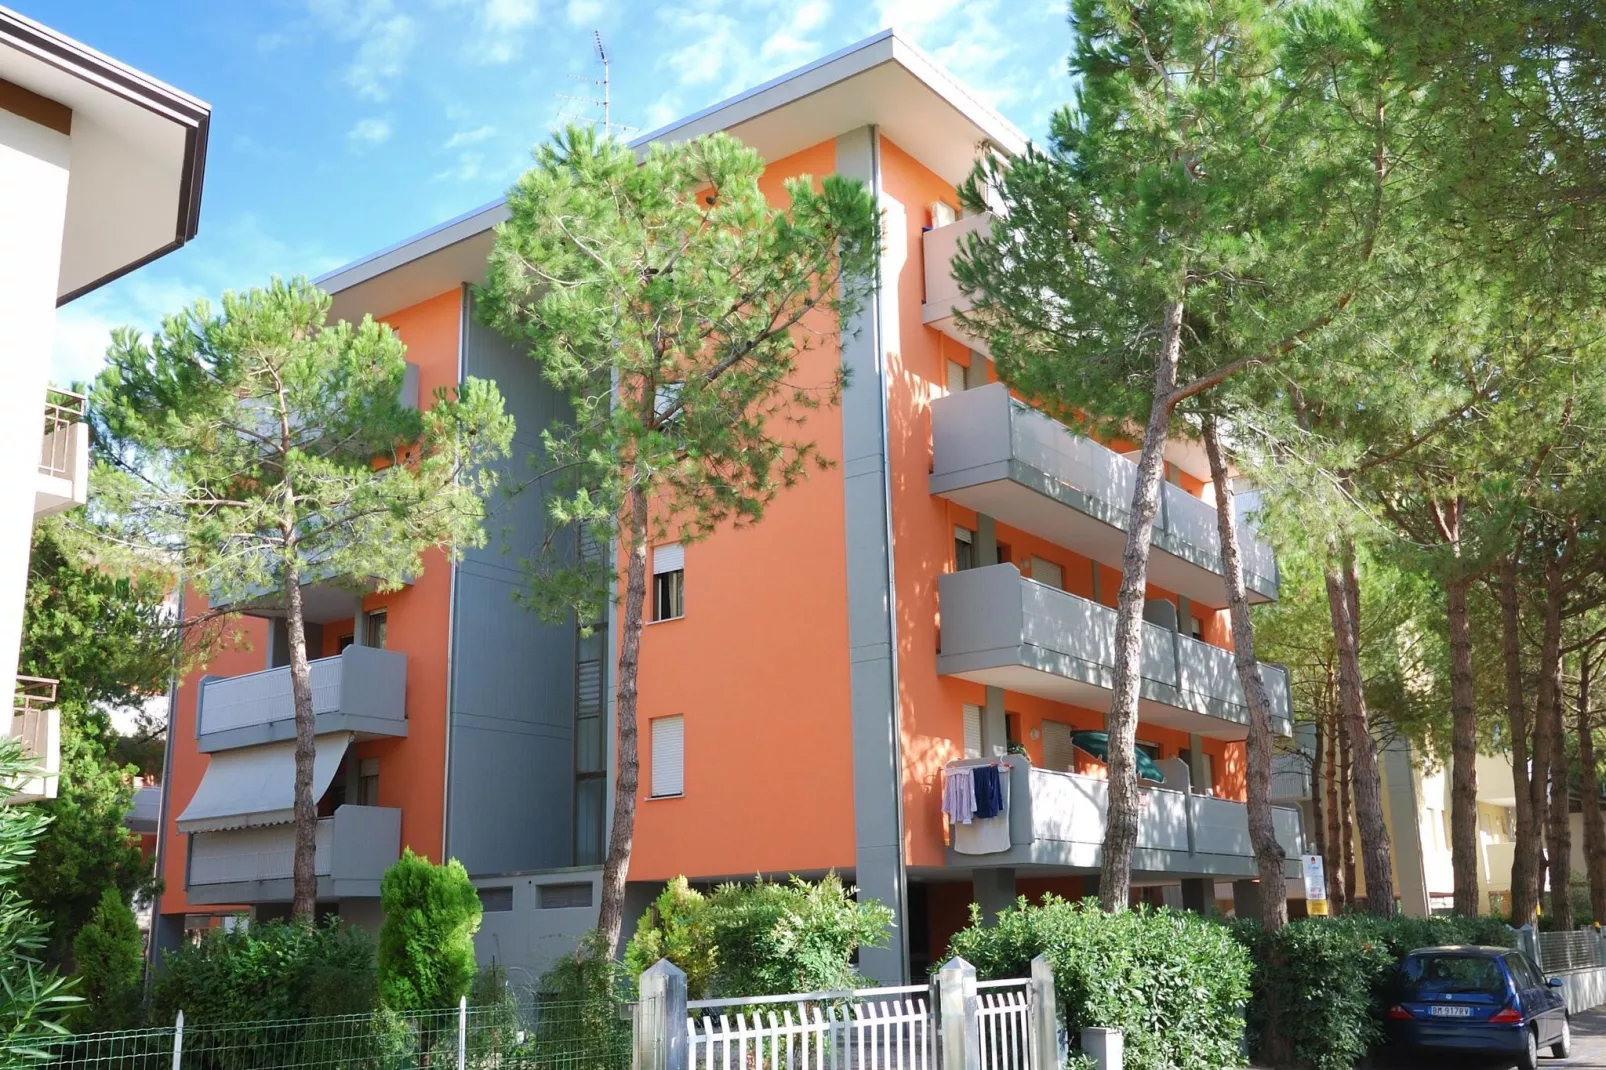 Apartment building Condominio Tiepolo e Tiziano BibioneC 42